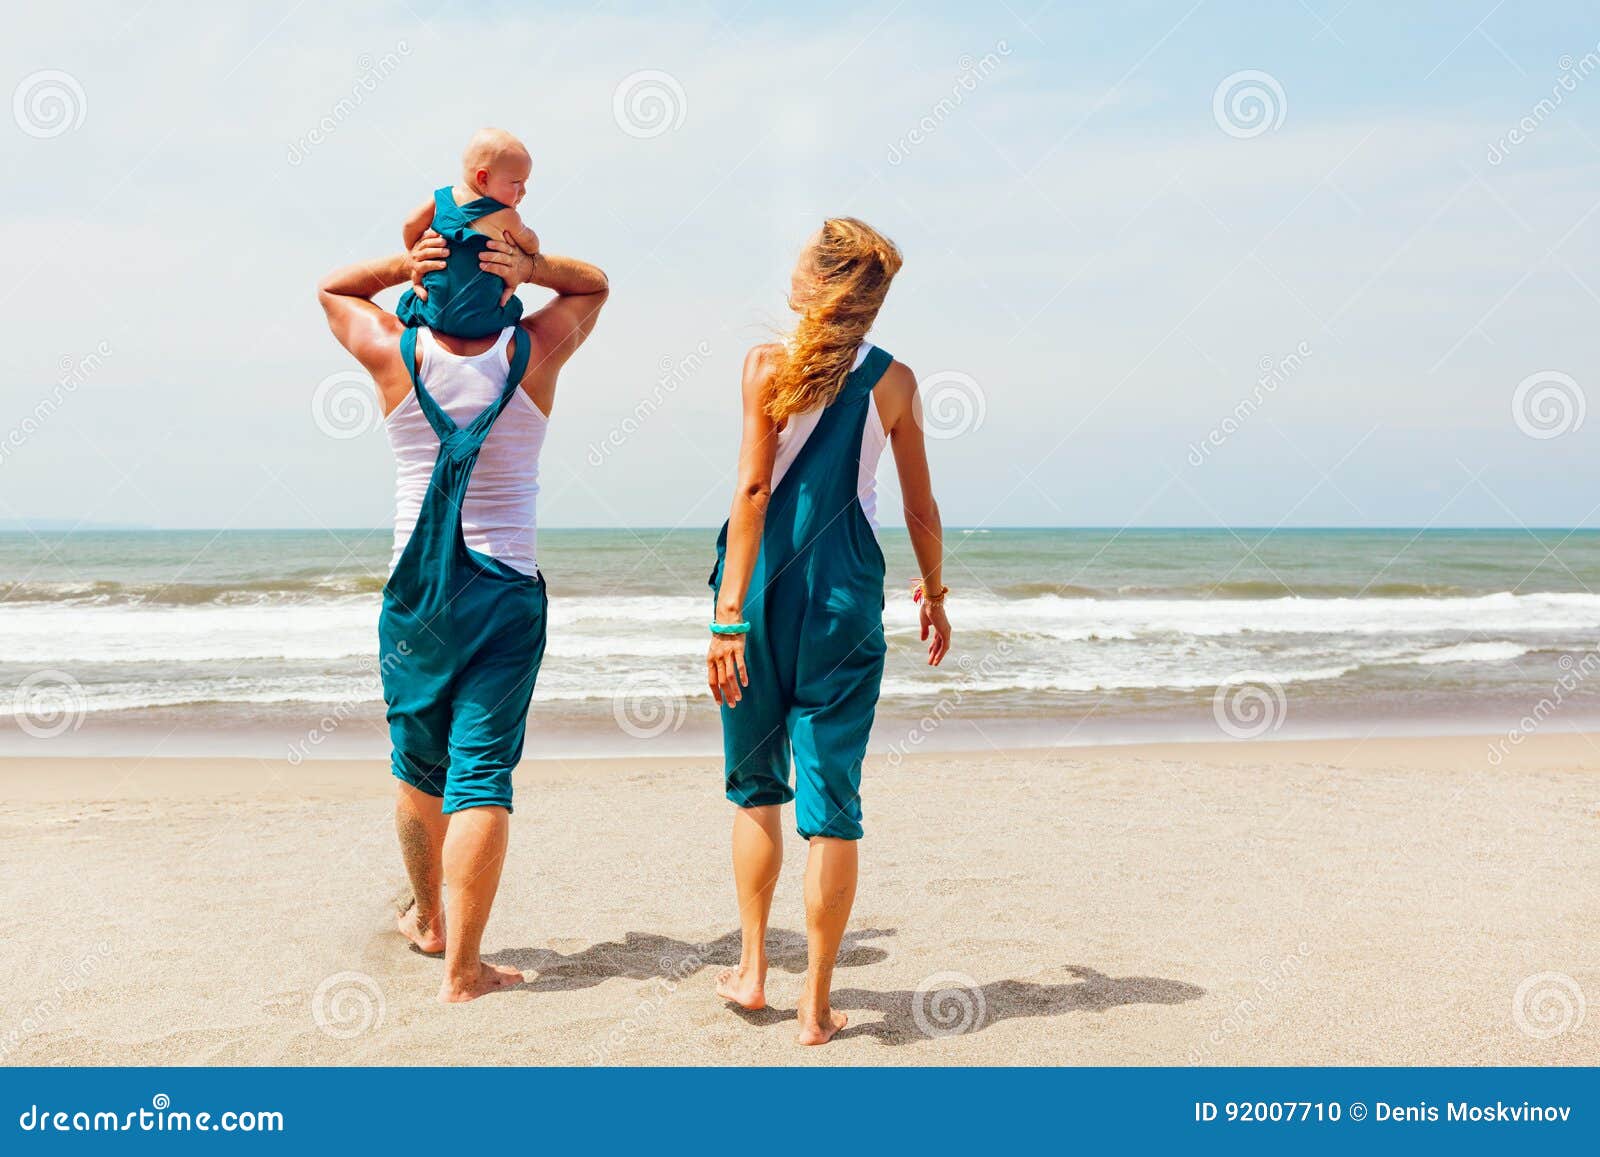 Funny Family Walking on the Sea Beach Stock Photo - Image of joyful,  family: 92007710